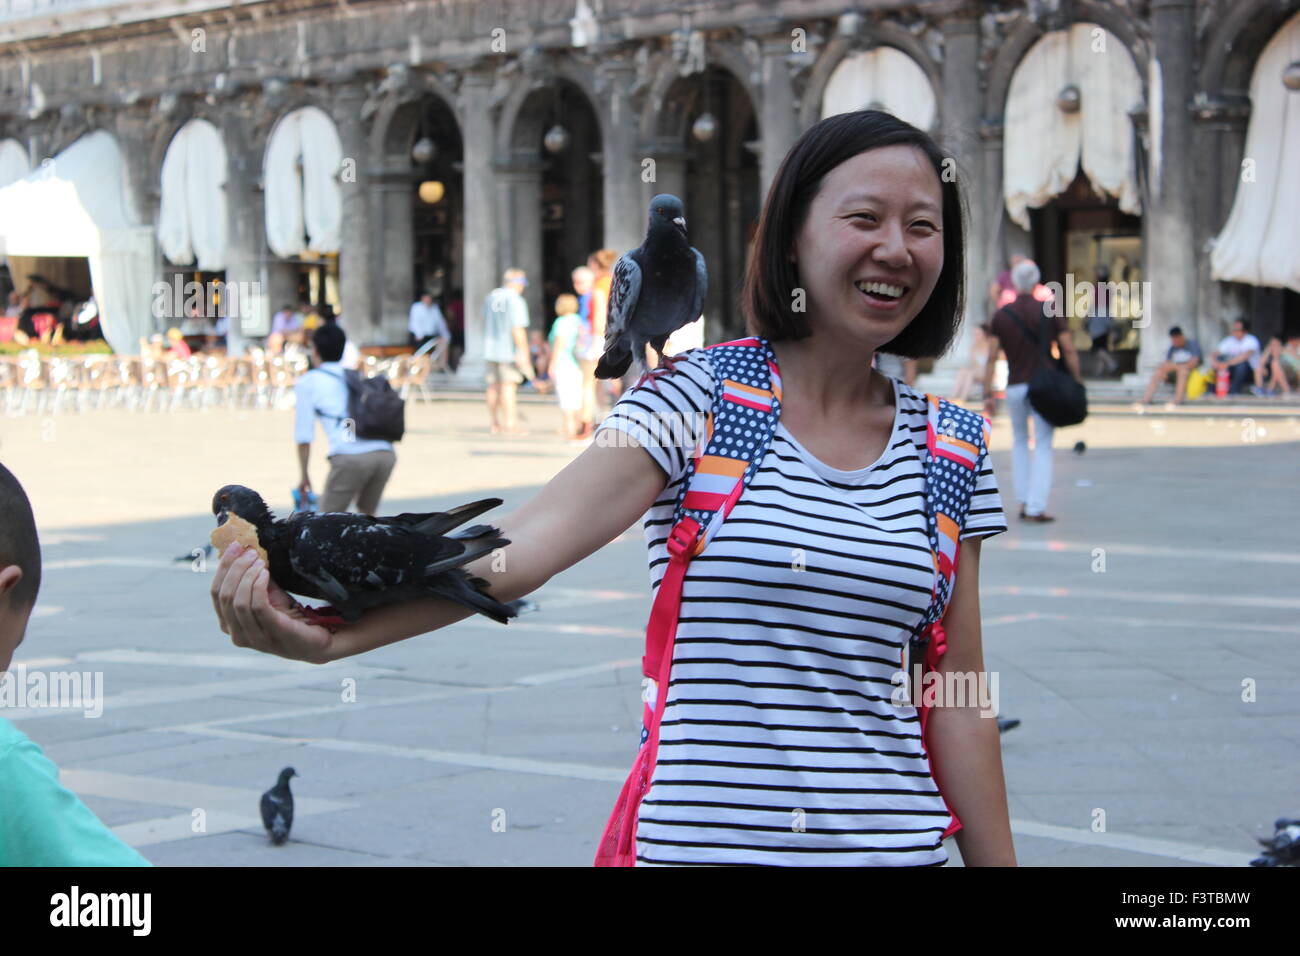 Une femme asiatique pose avec les pigeons dans la place San Marco, Venise Italie Banque D'Images